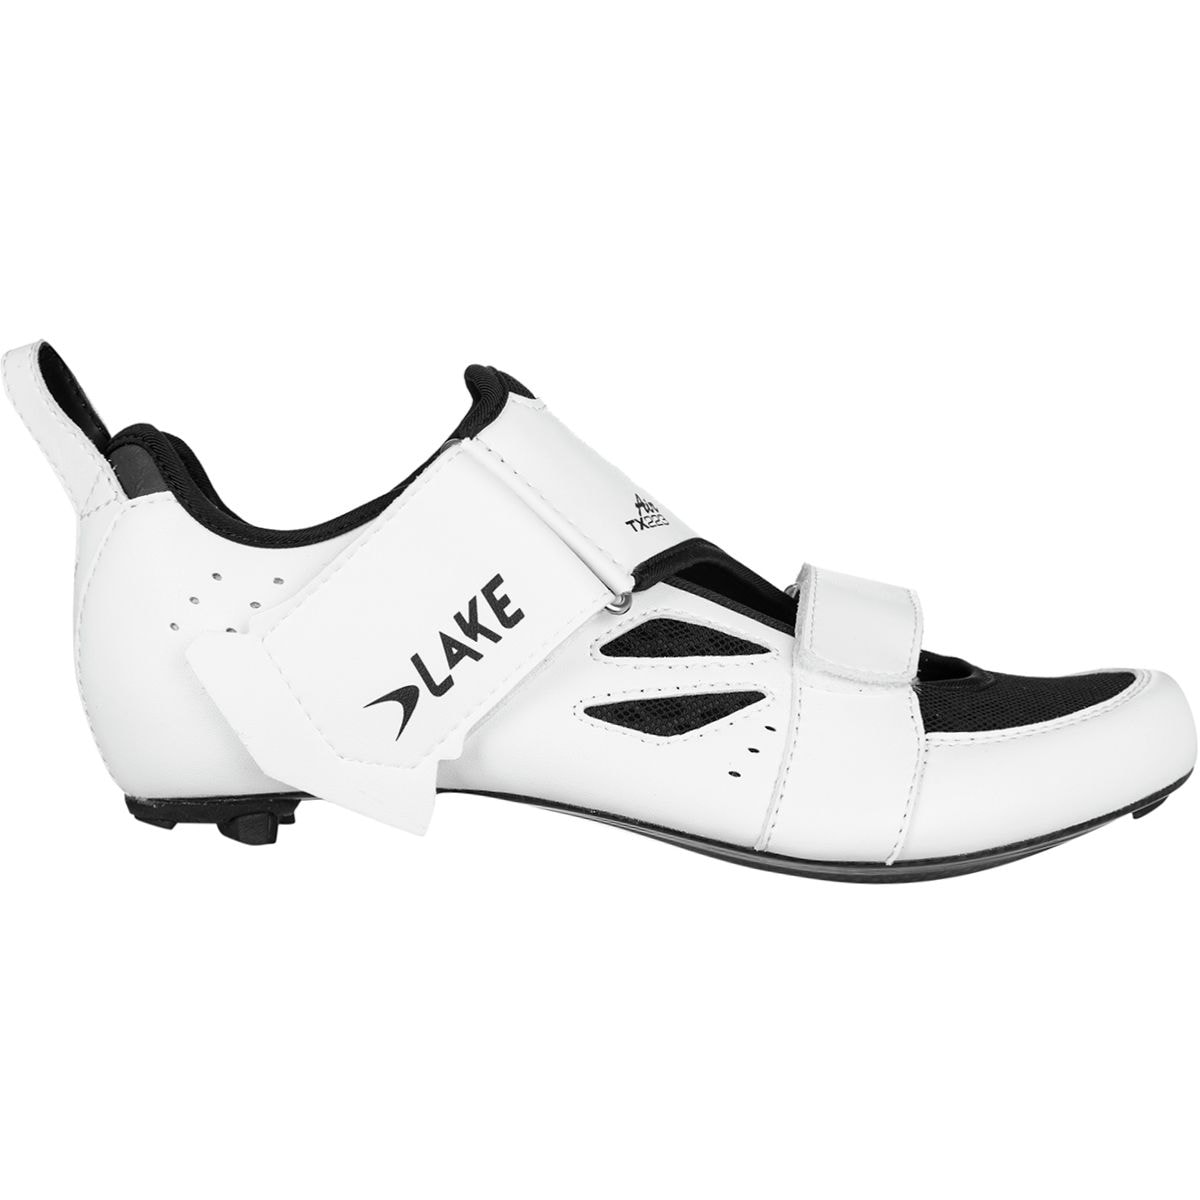 Lake TX223 Tri Shoe - Men's White/Black, 42.5